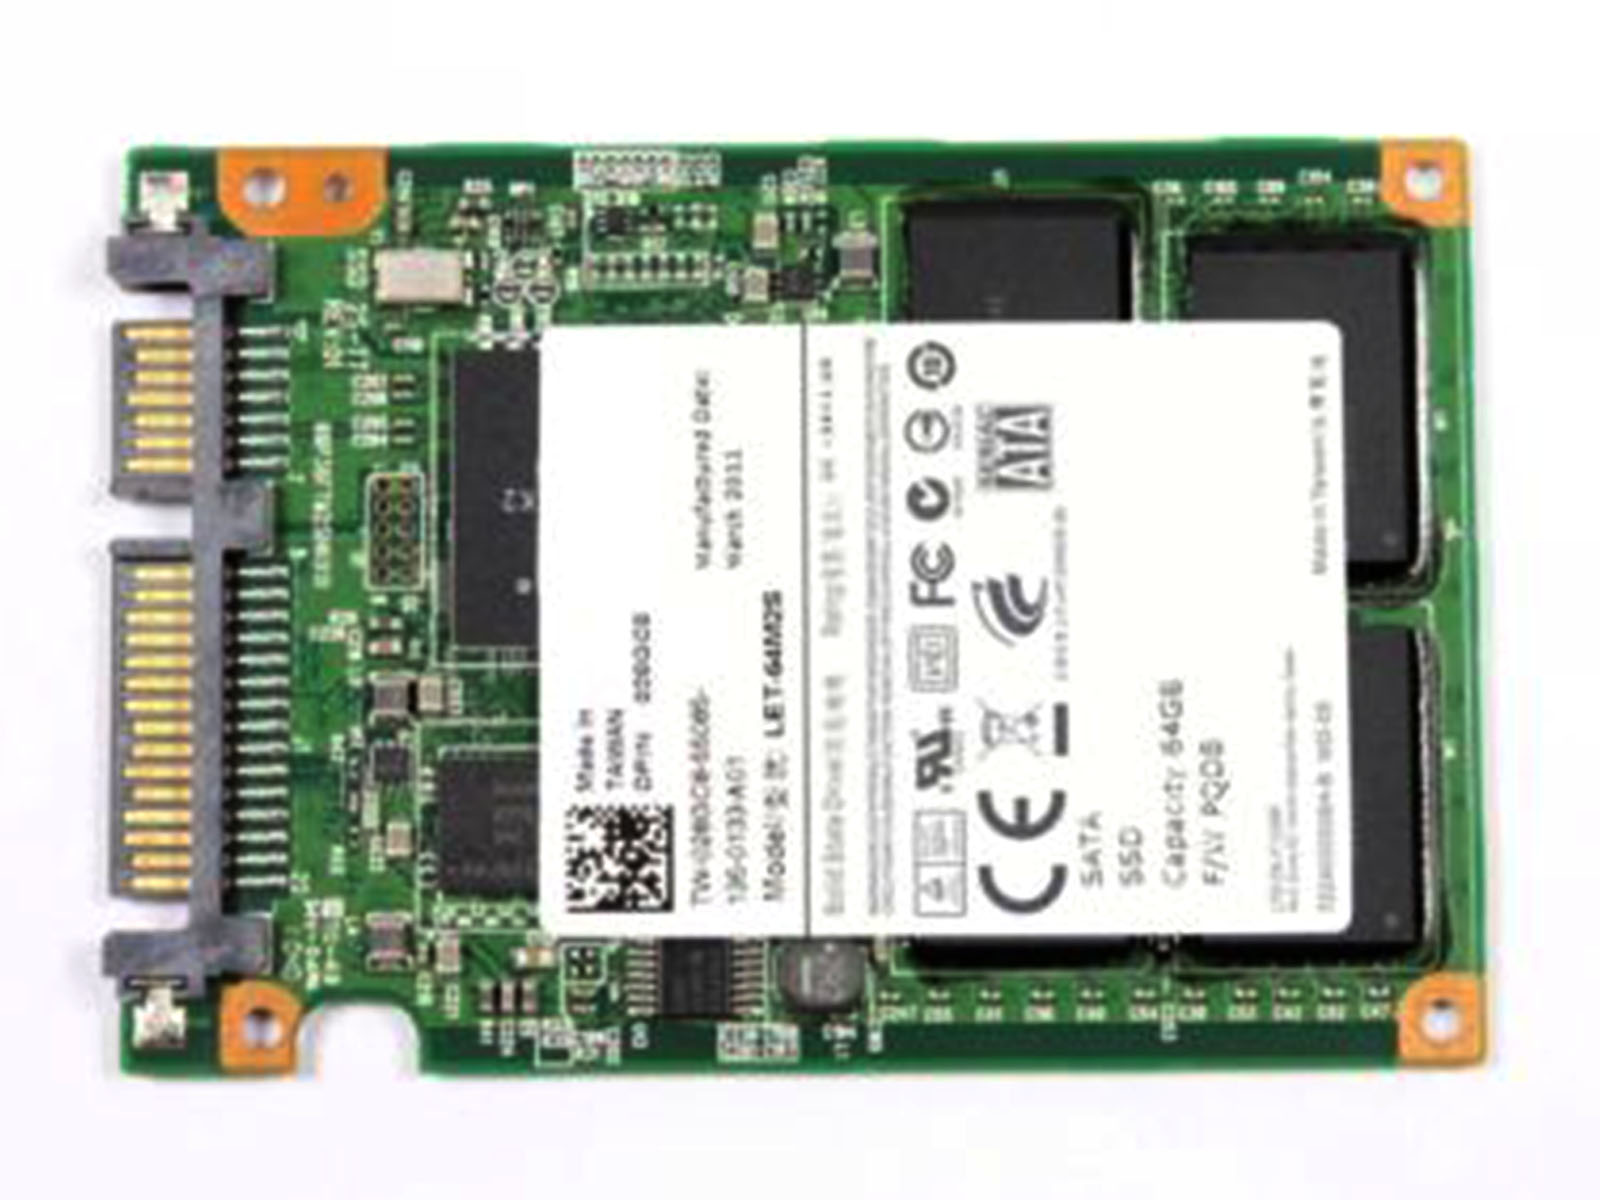 Liteon 2.5" SATA SSD